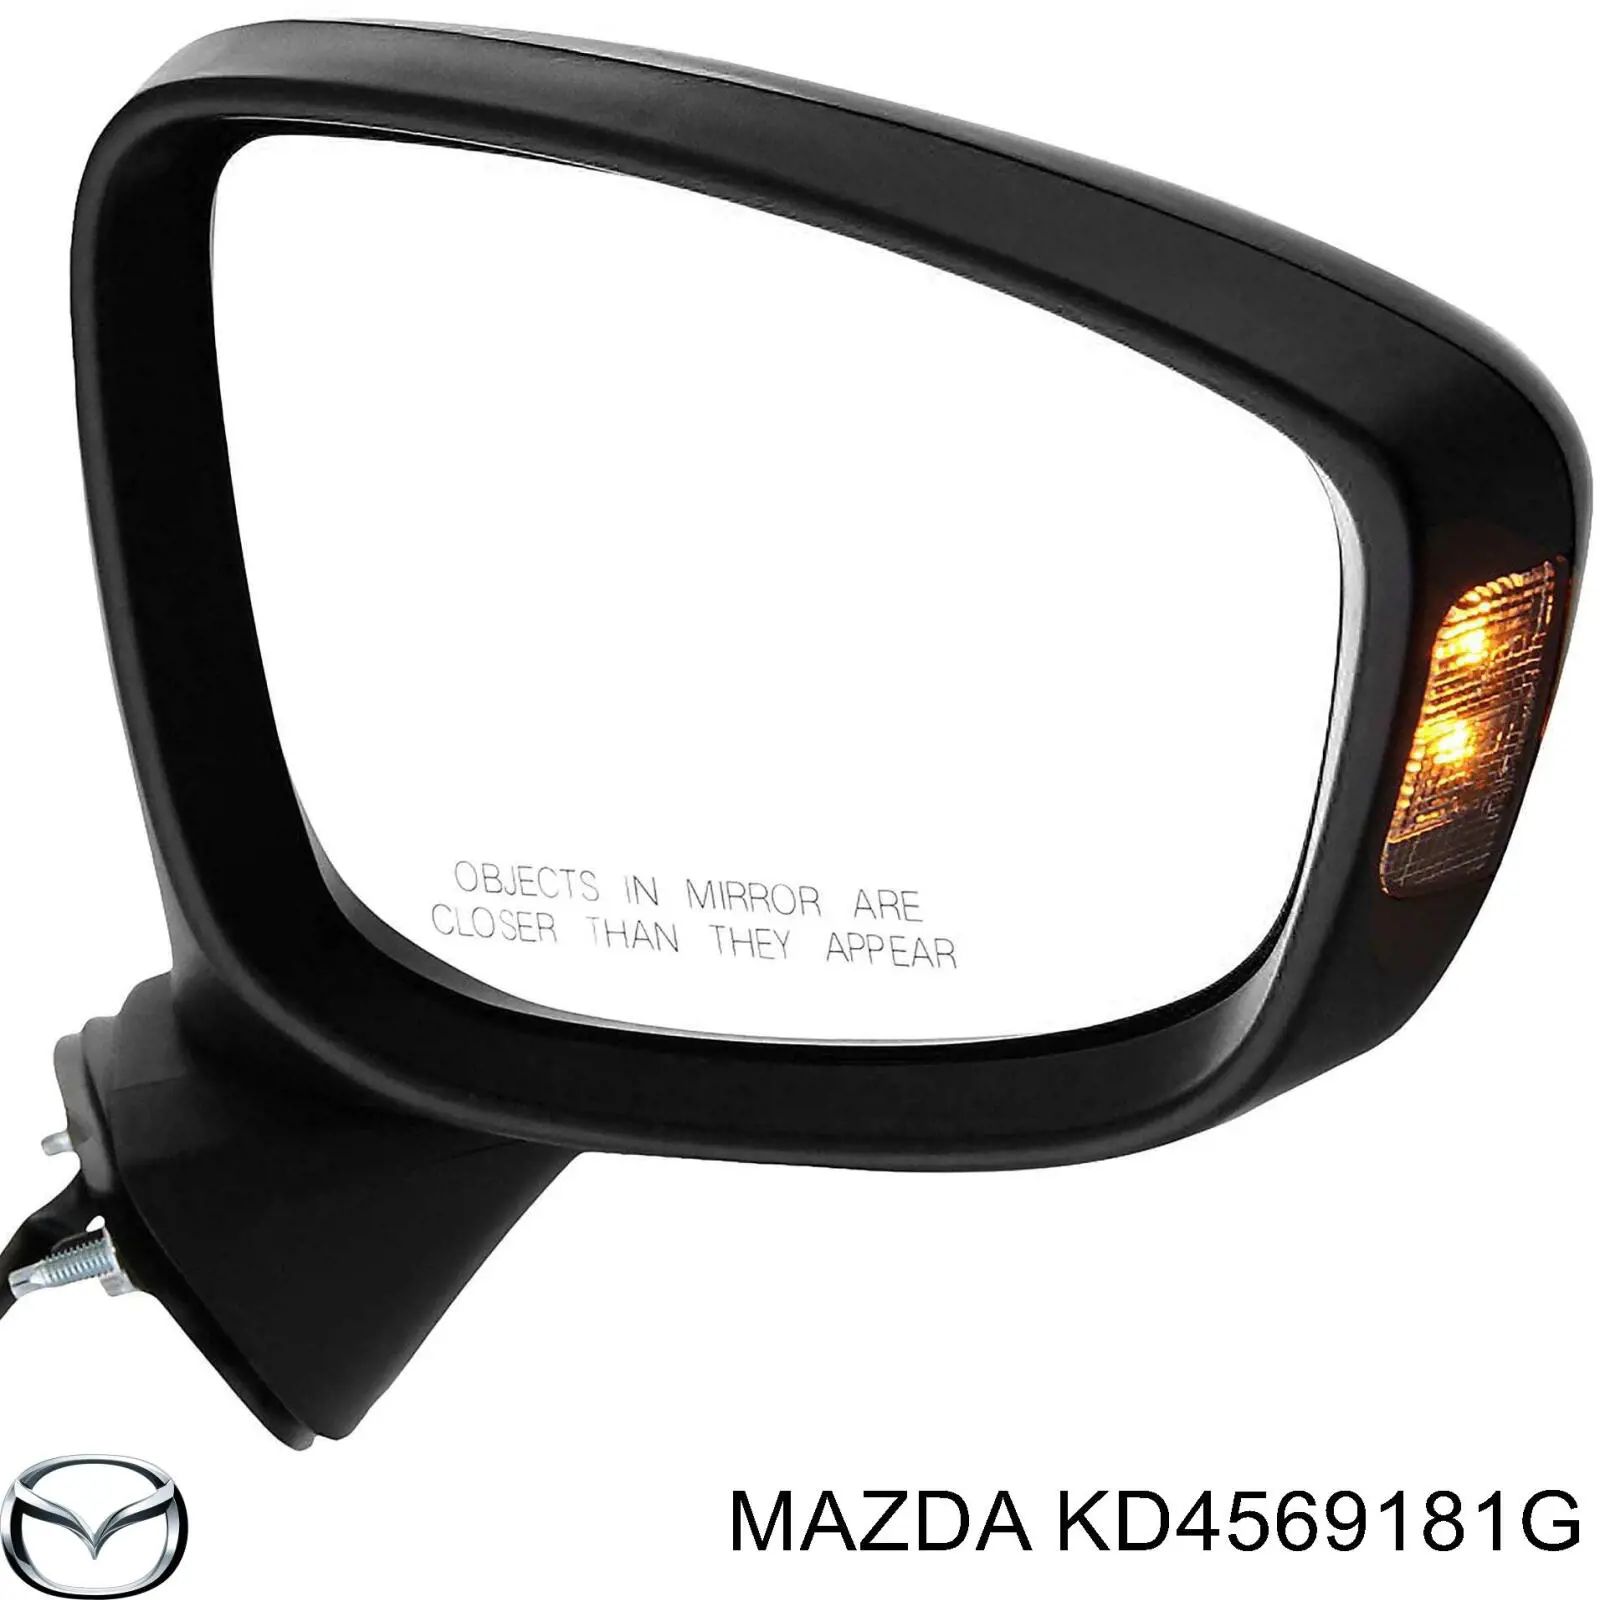 KD5369181K Mazda espejo retrovisor izquierdo